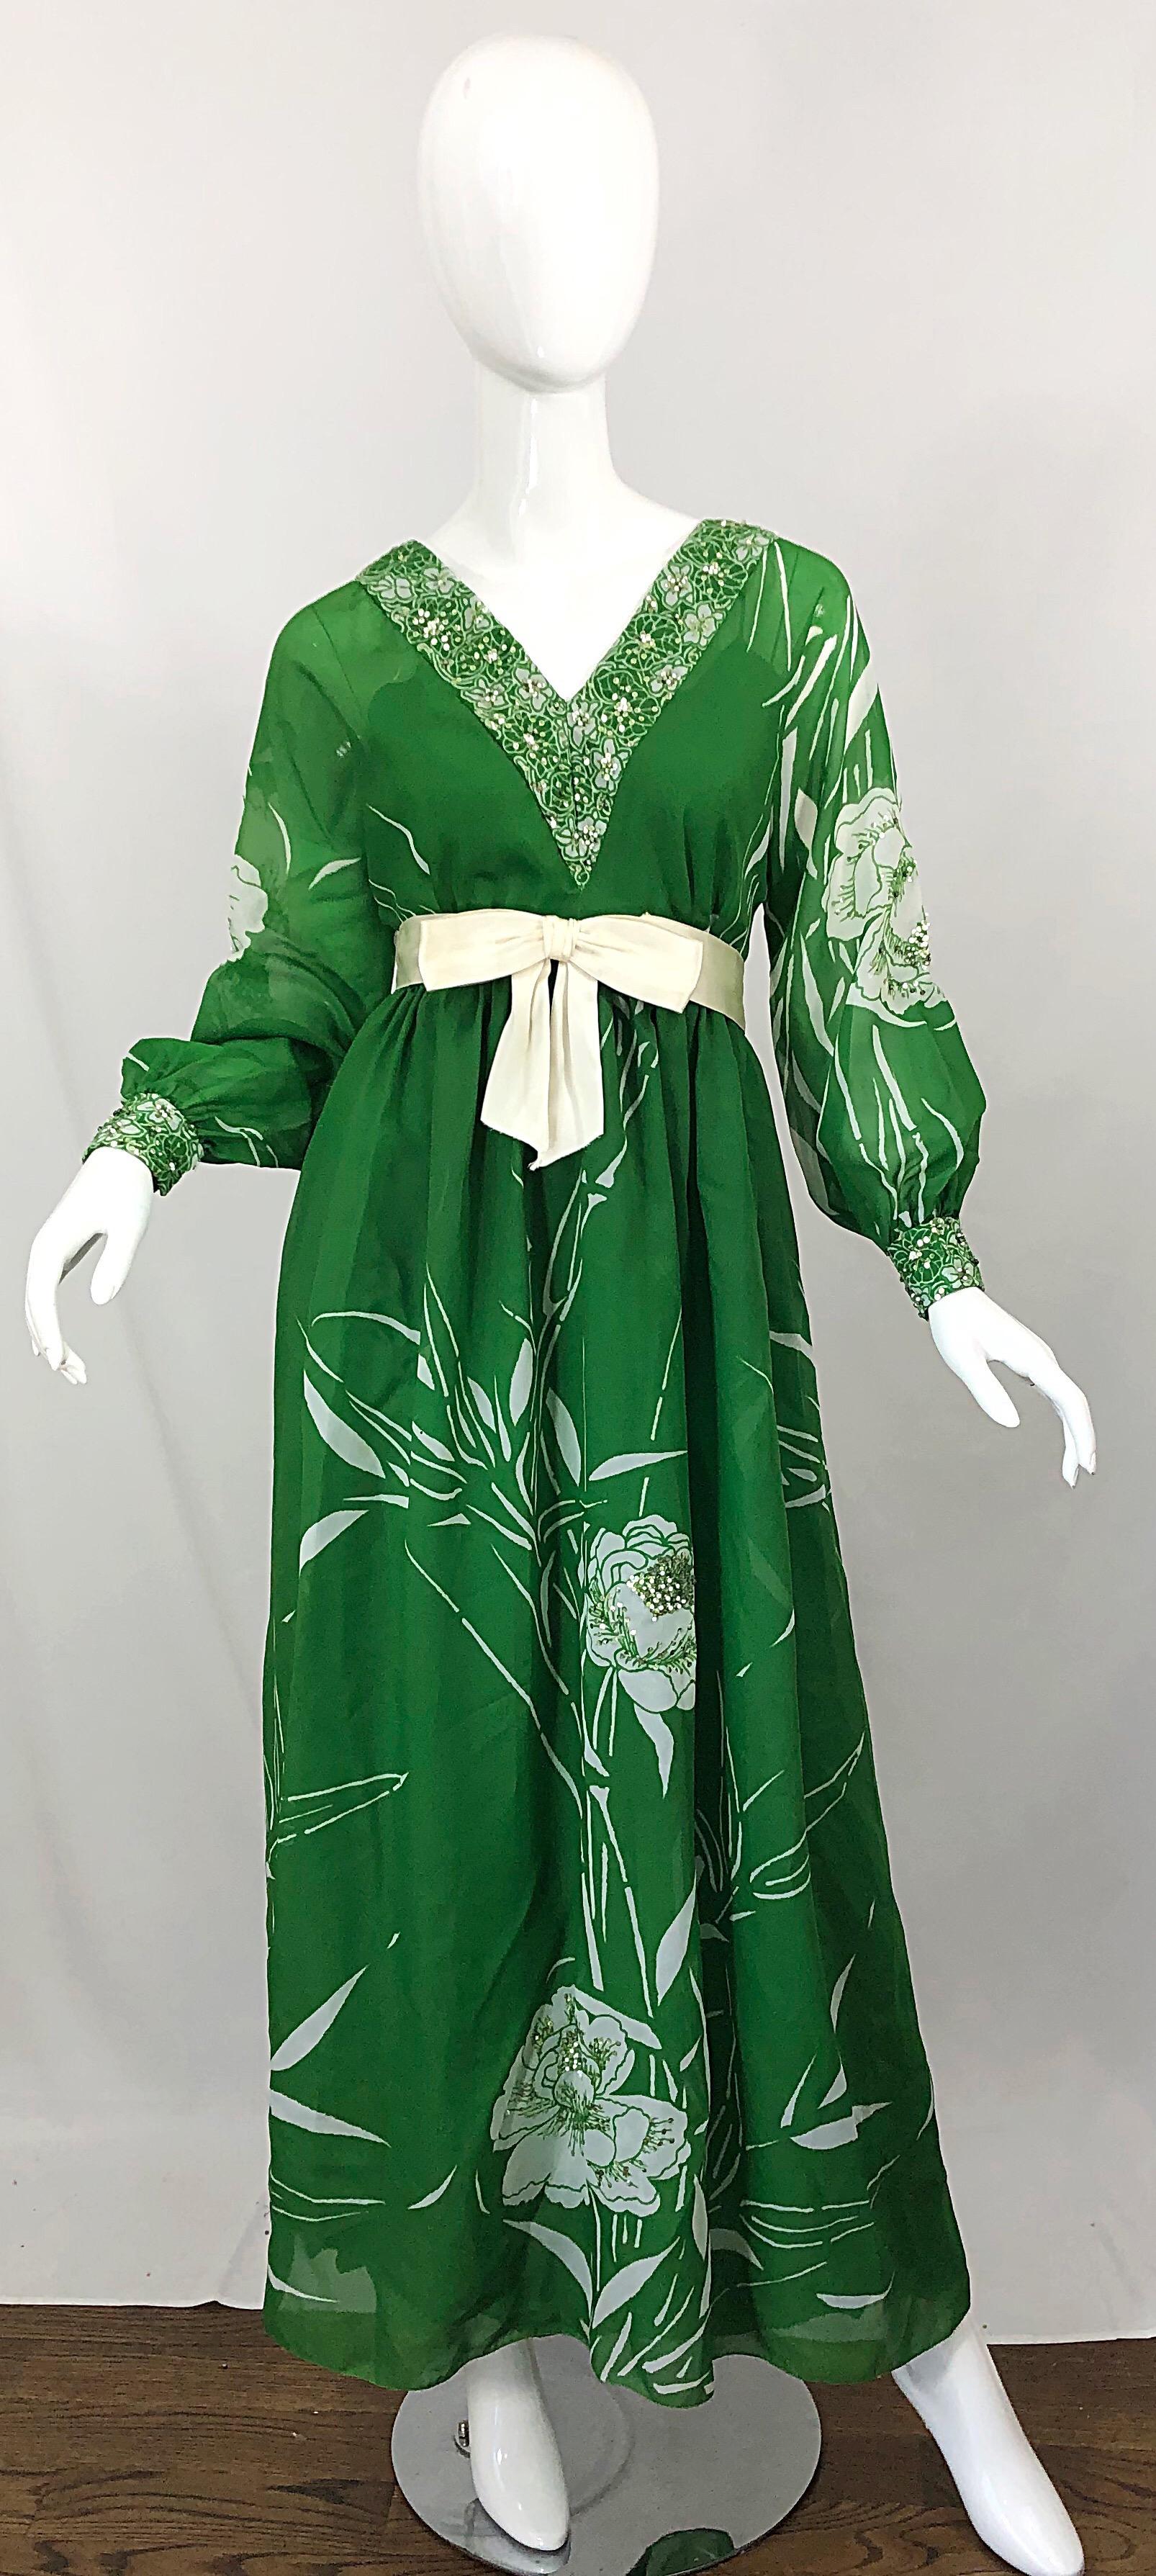 Schöne frühen 1970er VICTORIA ROYAL kelly grün und weiß abstrakte florale Pailletten Kleid / Maxikleid! Das gesamte Kleid, die Ärmel, der Saum und die Manschetten sind bedruckt. Hunderte von handgenähten hellgrünen Minipailletten und weißen Perlen